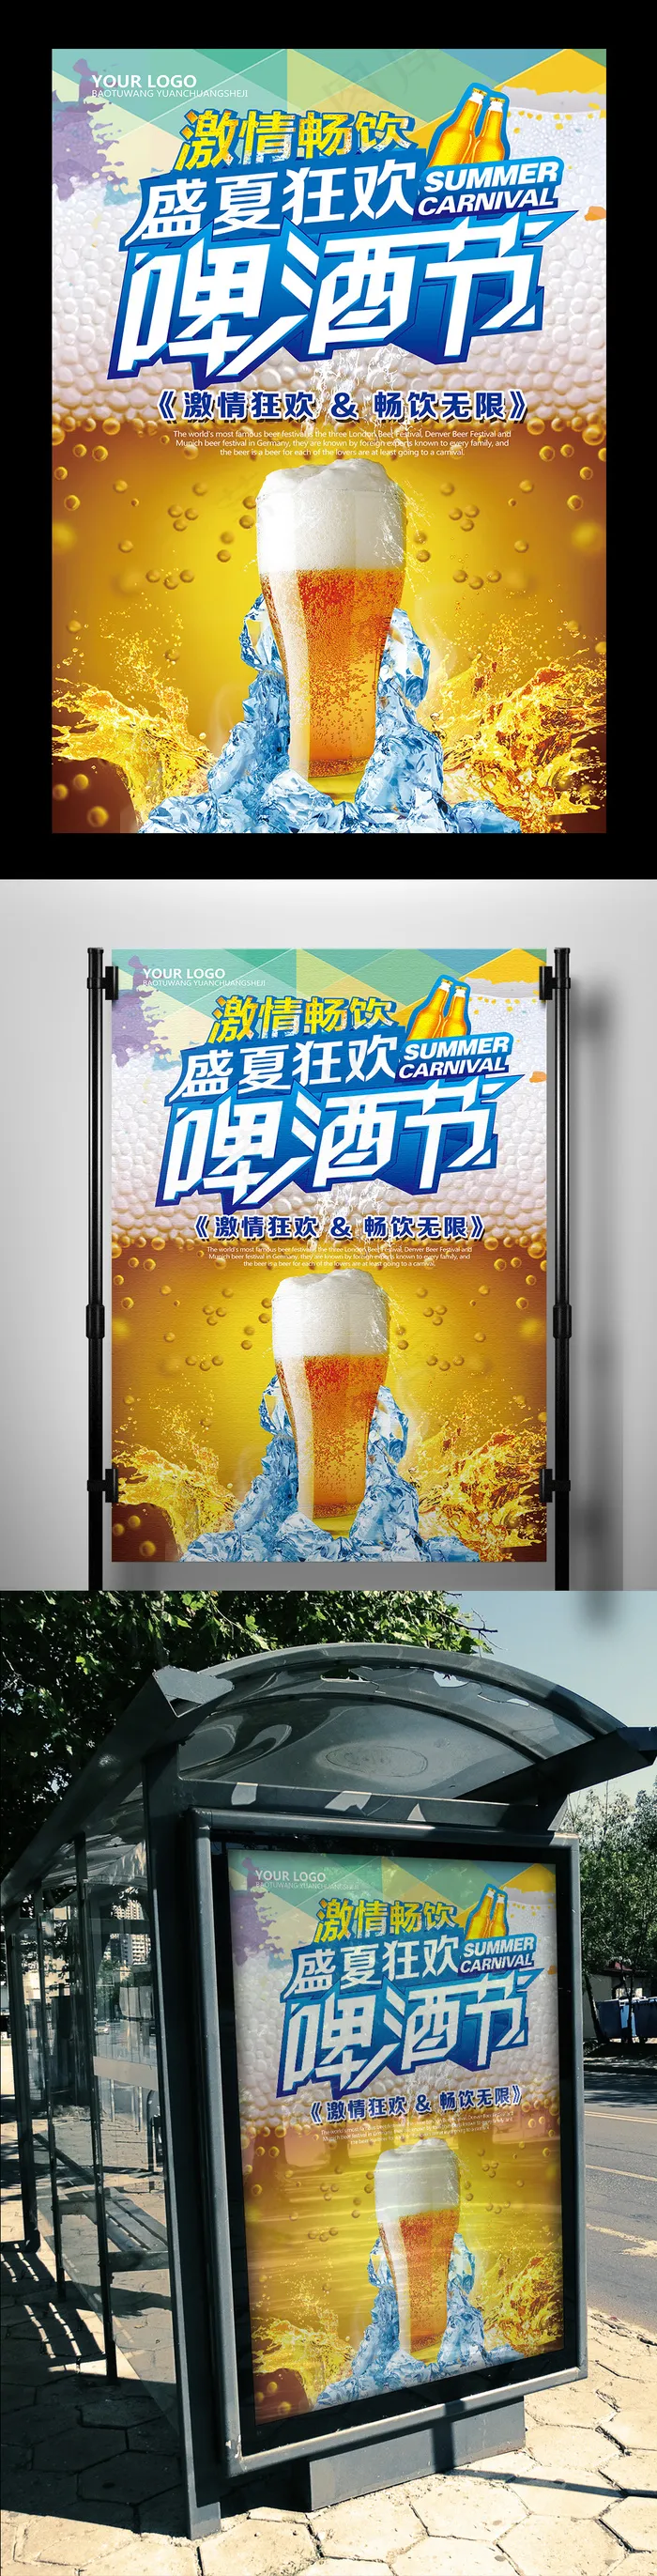 2017年黄色大气盛夏啤酒节狂欢海...